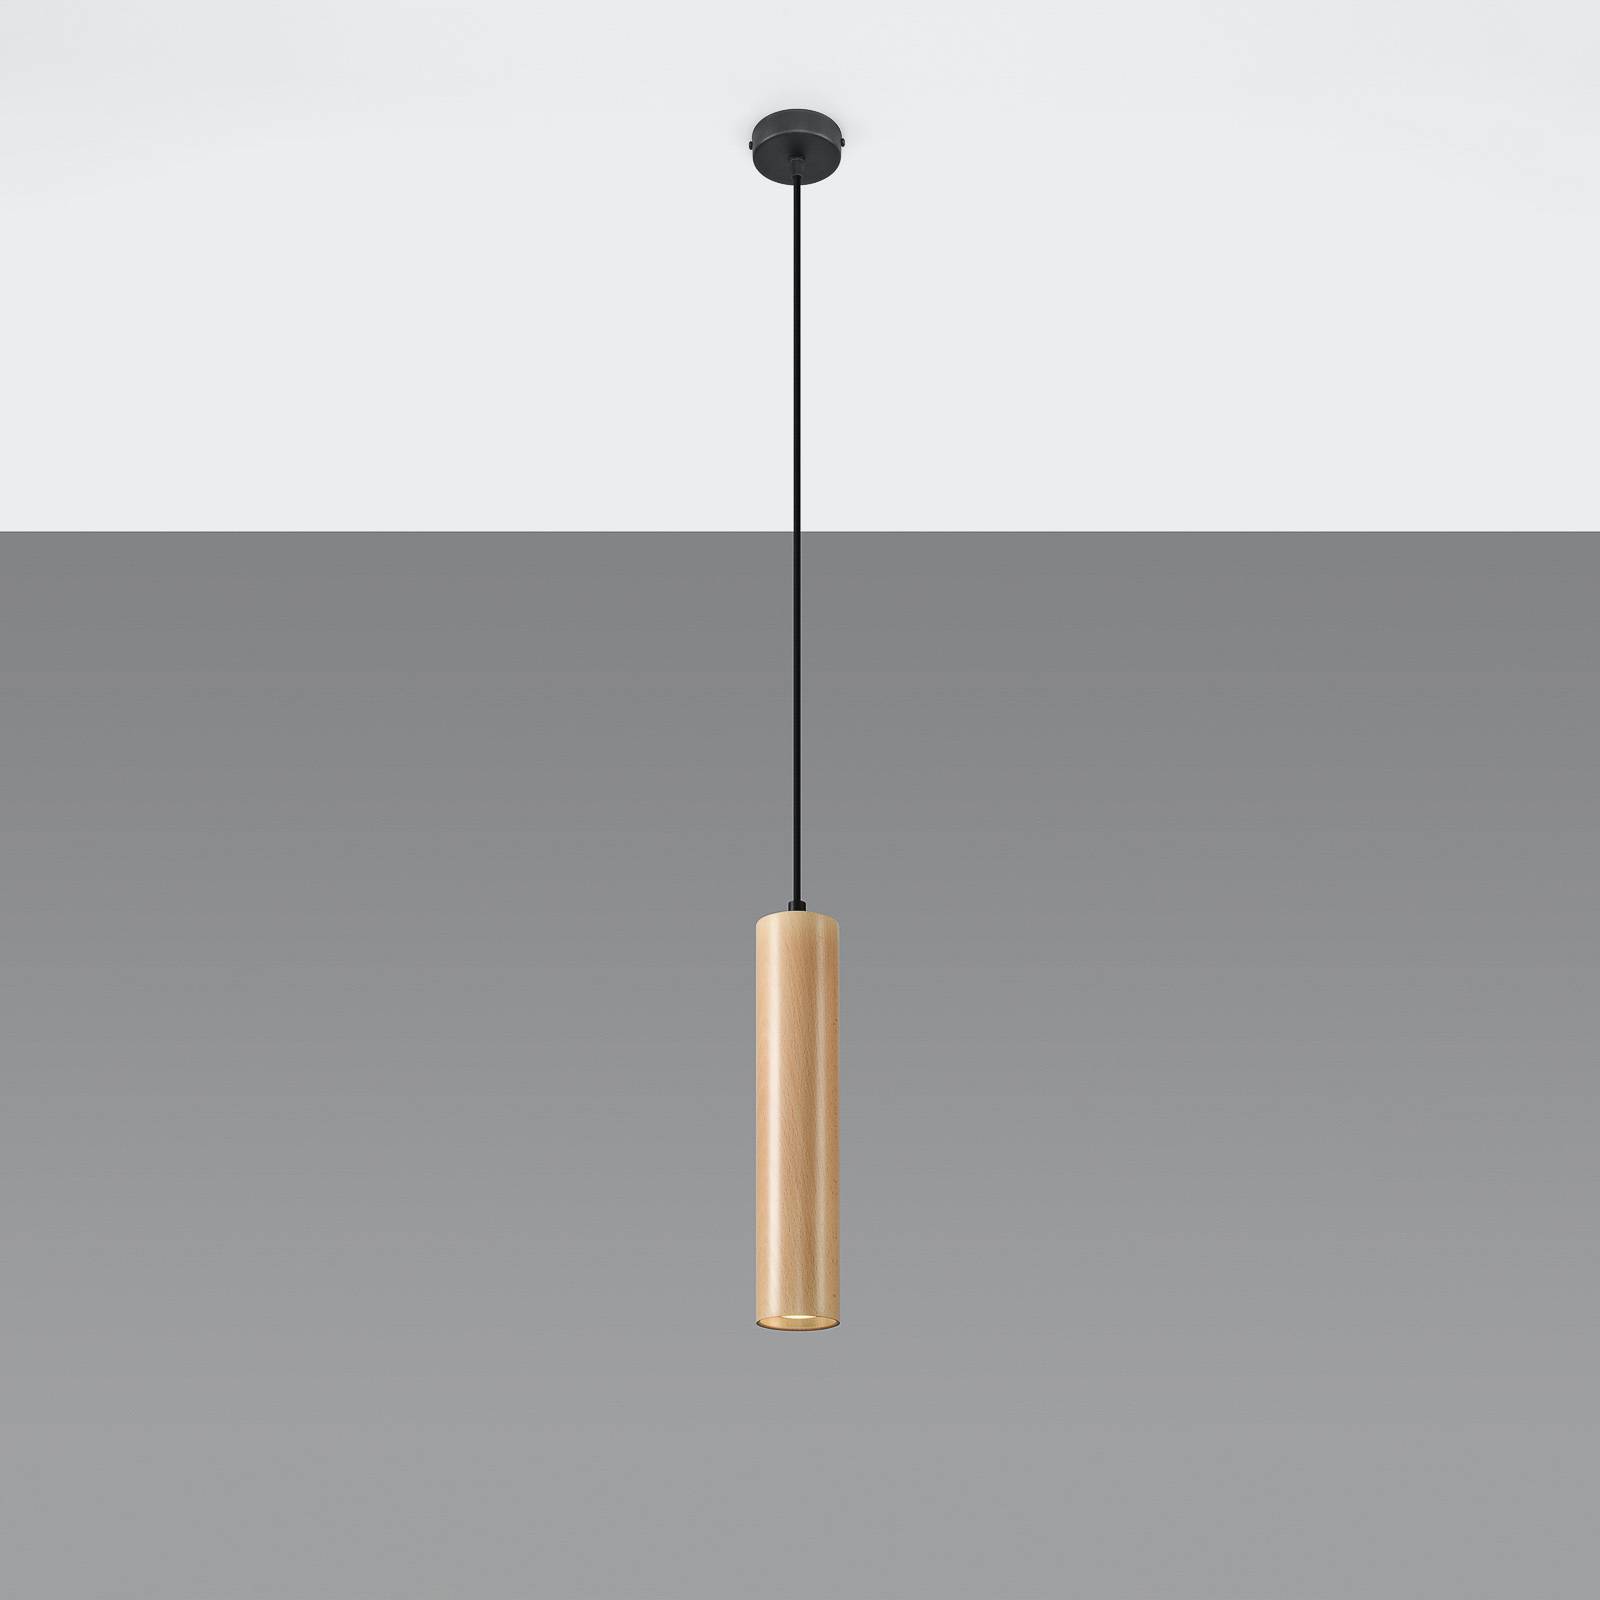 Lampa wisząca Tube z drewna, 1-punktowa